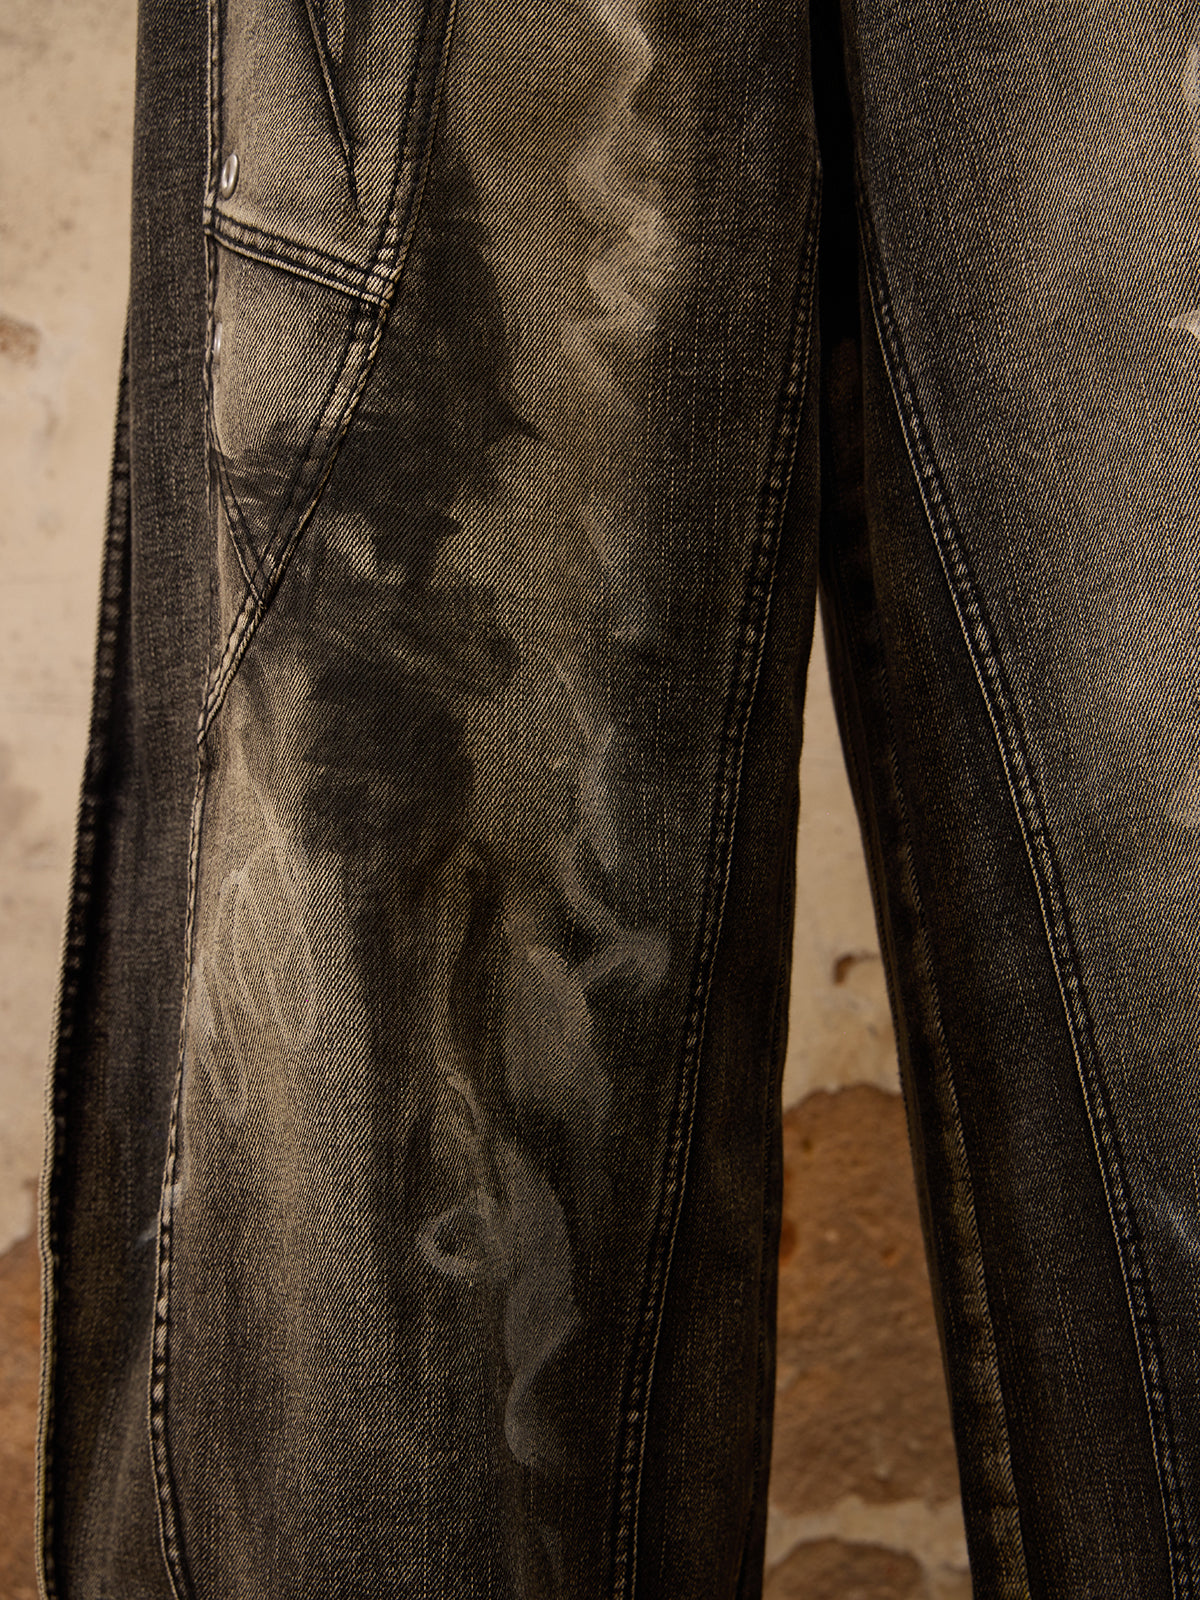 Personsoul Graffiti Contour Jeans